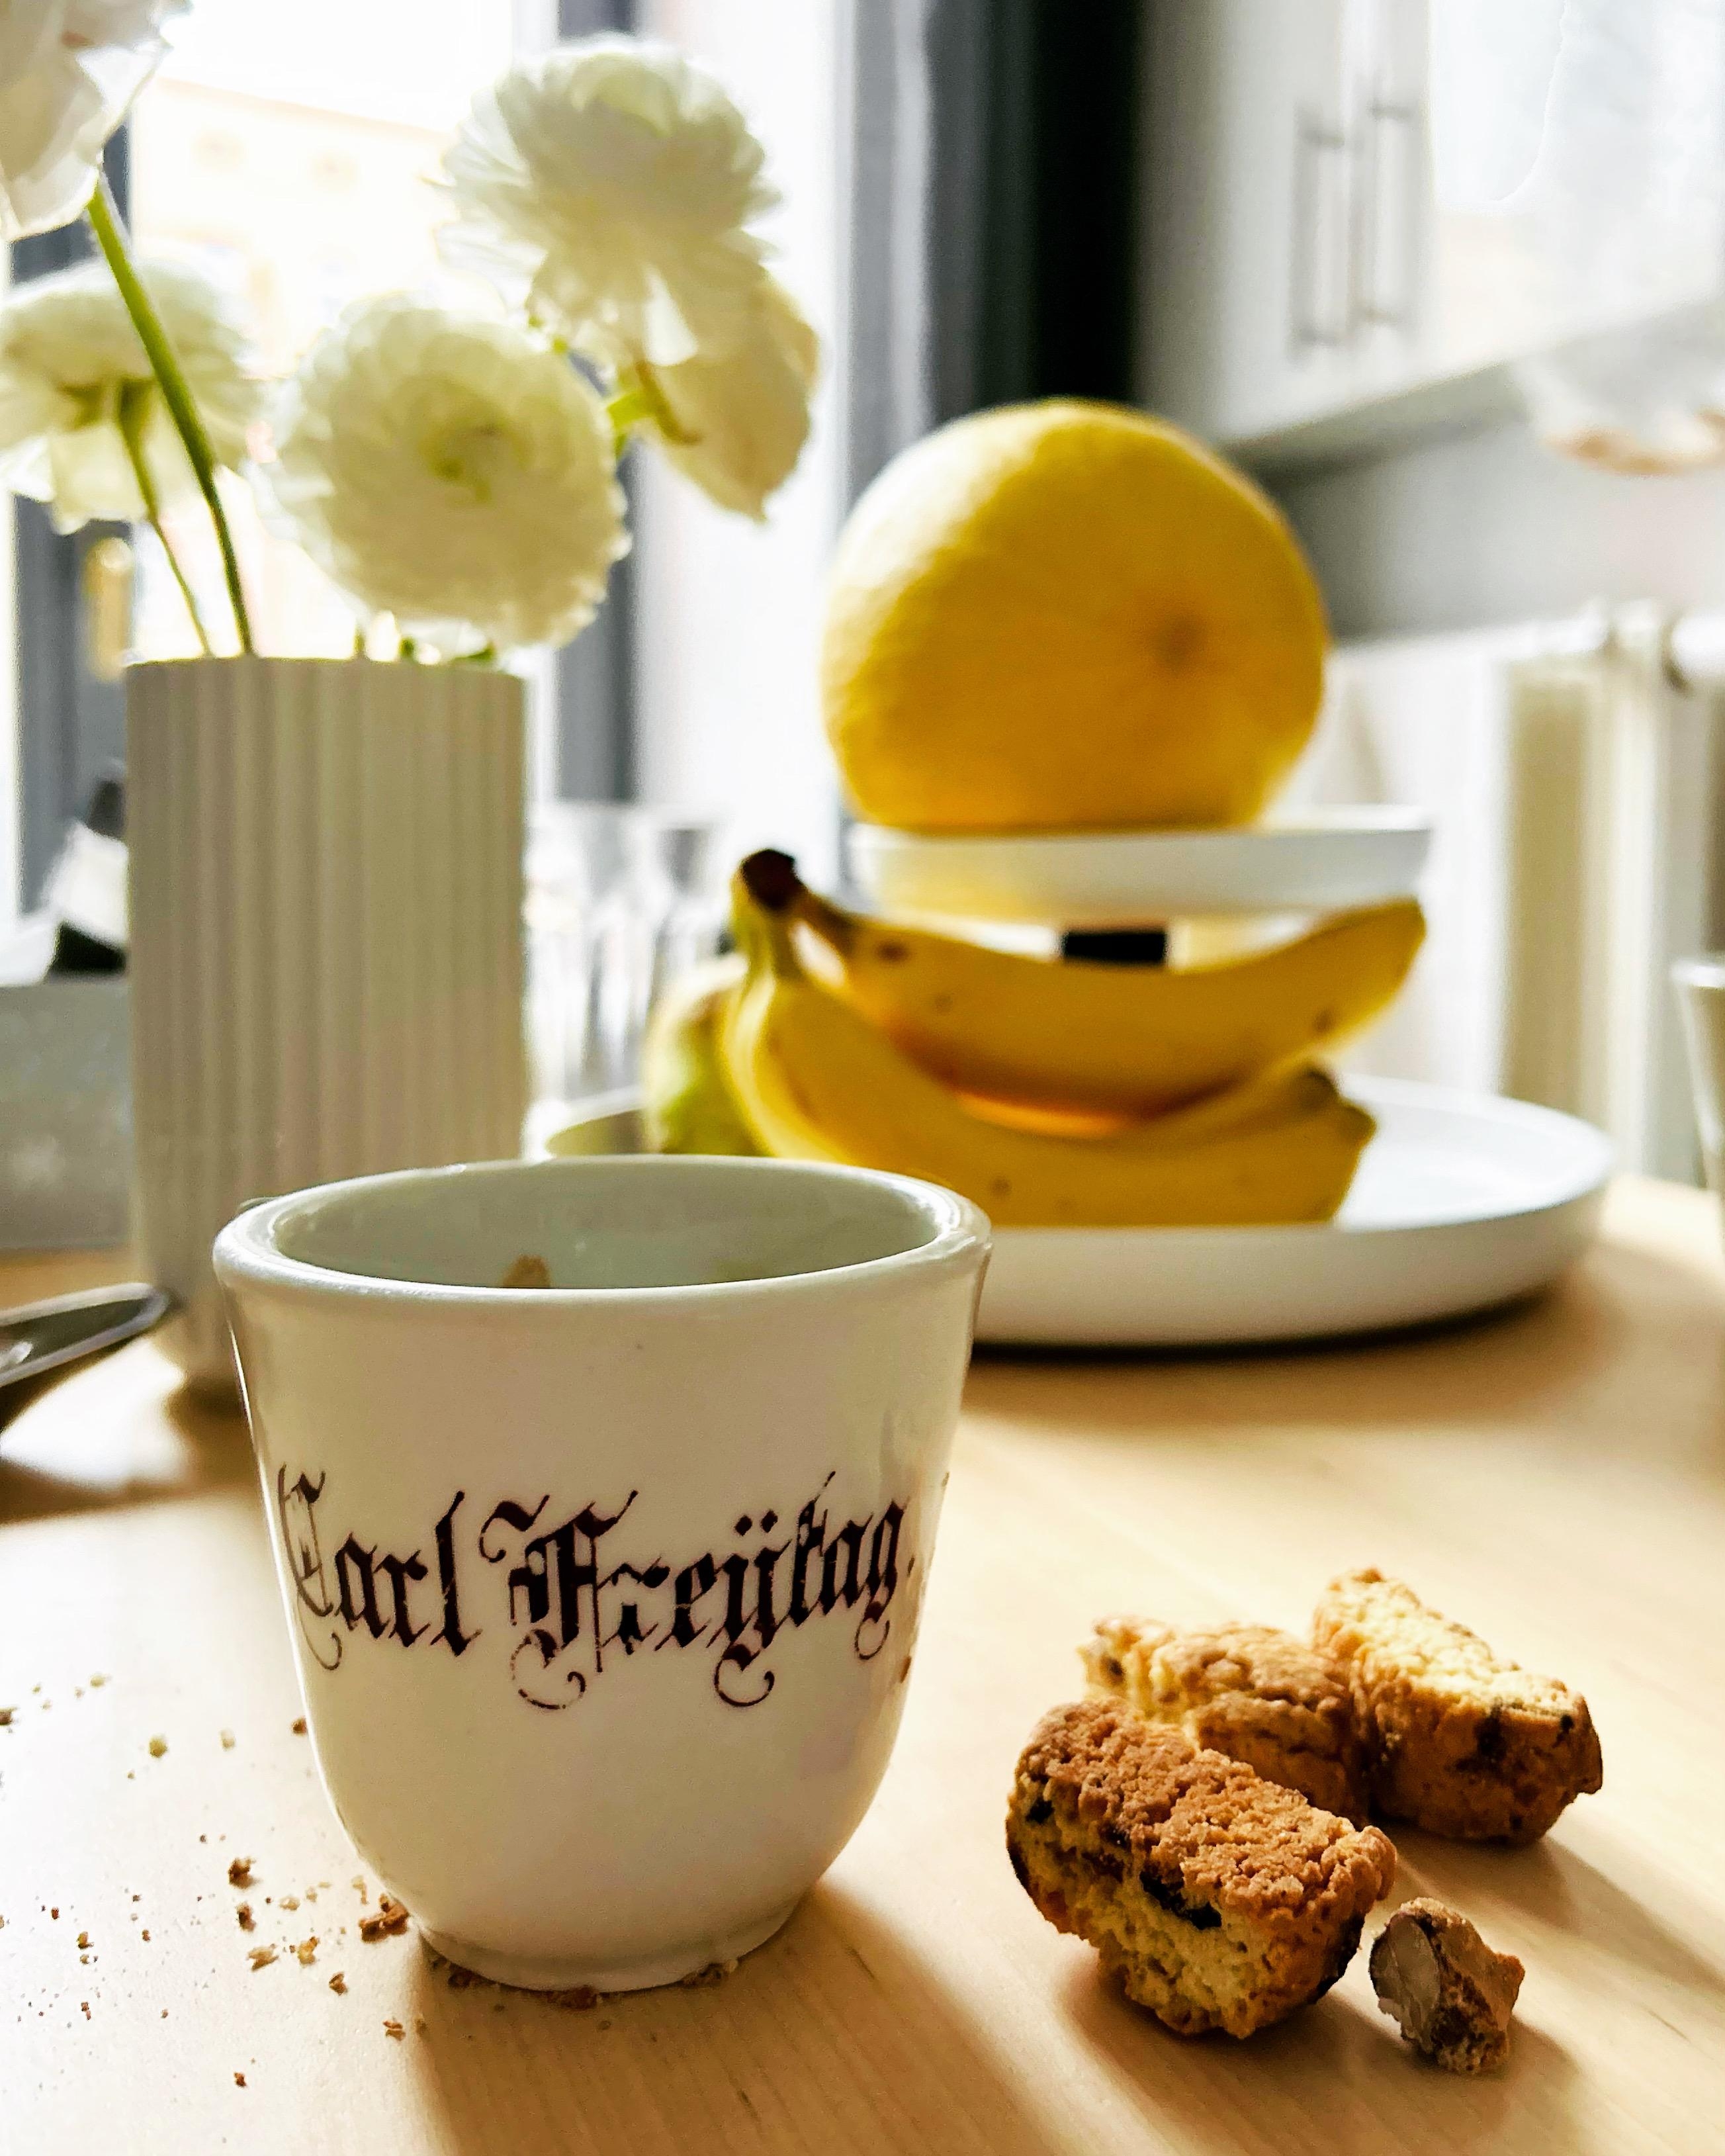 Carl Freytag. Aus seiner Tasse trinke ich gern meinen Kaffee.  #antiquität 
#küche #geschirr
#stillleben
#interieur